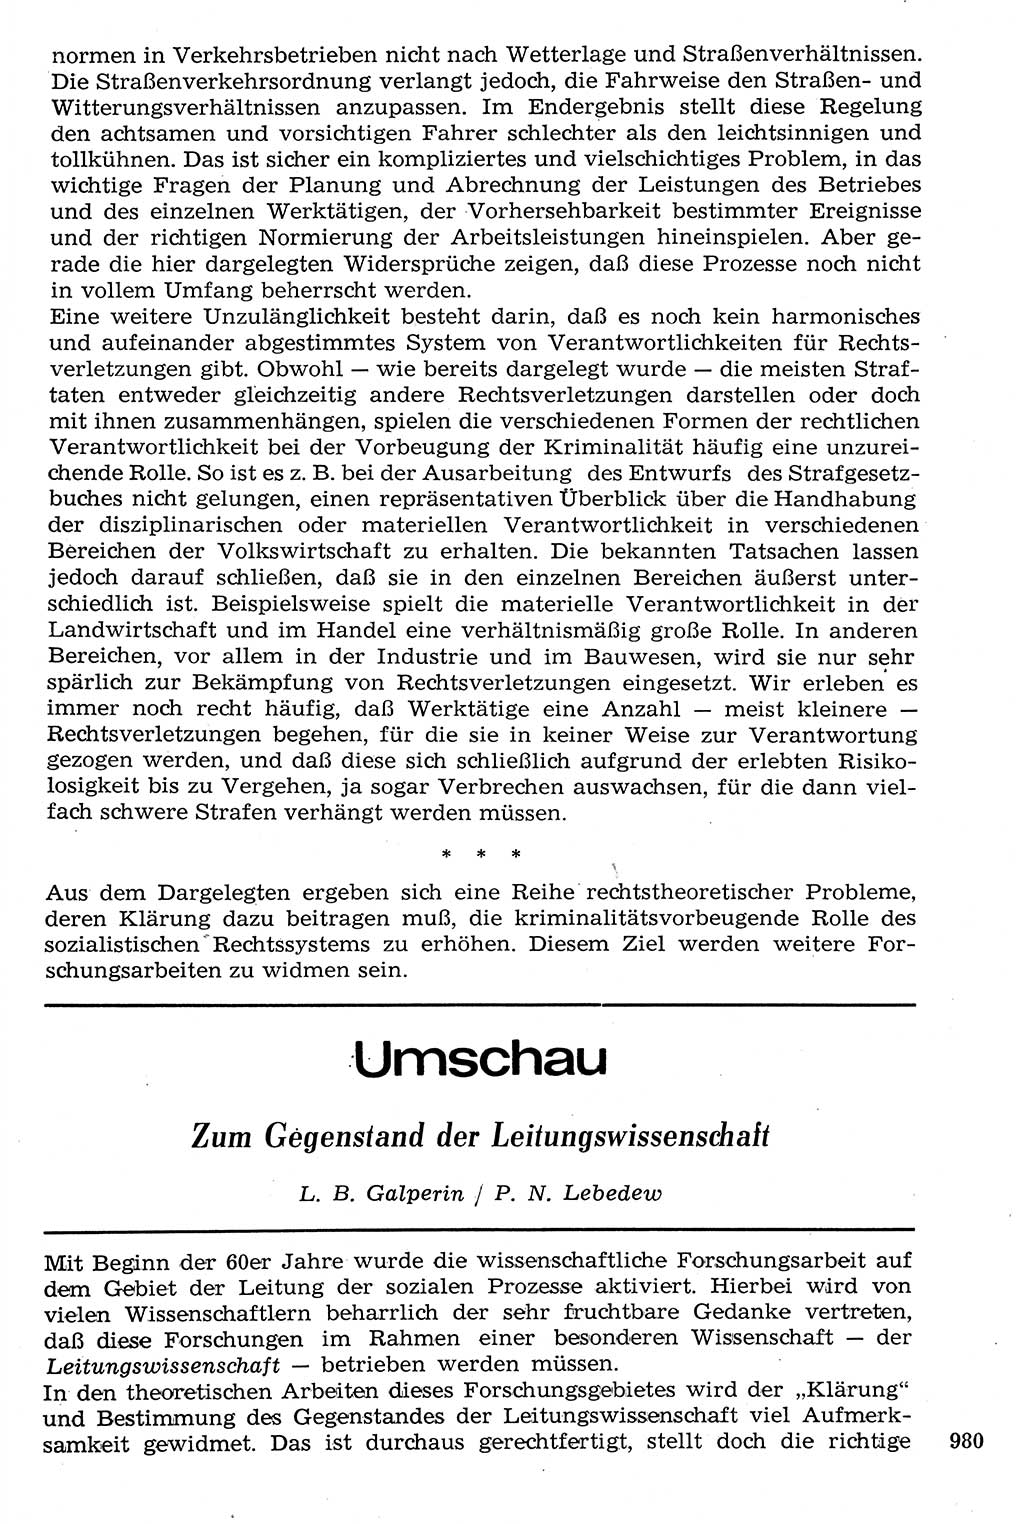 Staat und Recht (StuR), 17. Jahrgang [Deutsche Demokratische Republik (DDR)] 1968, Seite 980 (StuR DDR 1968, S. 980)